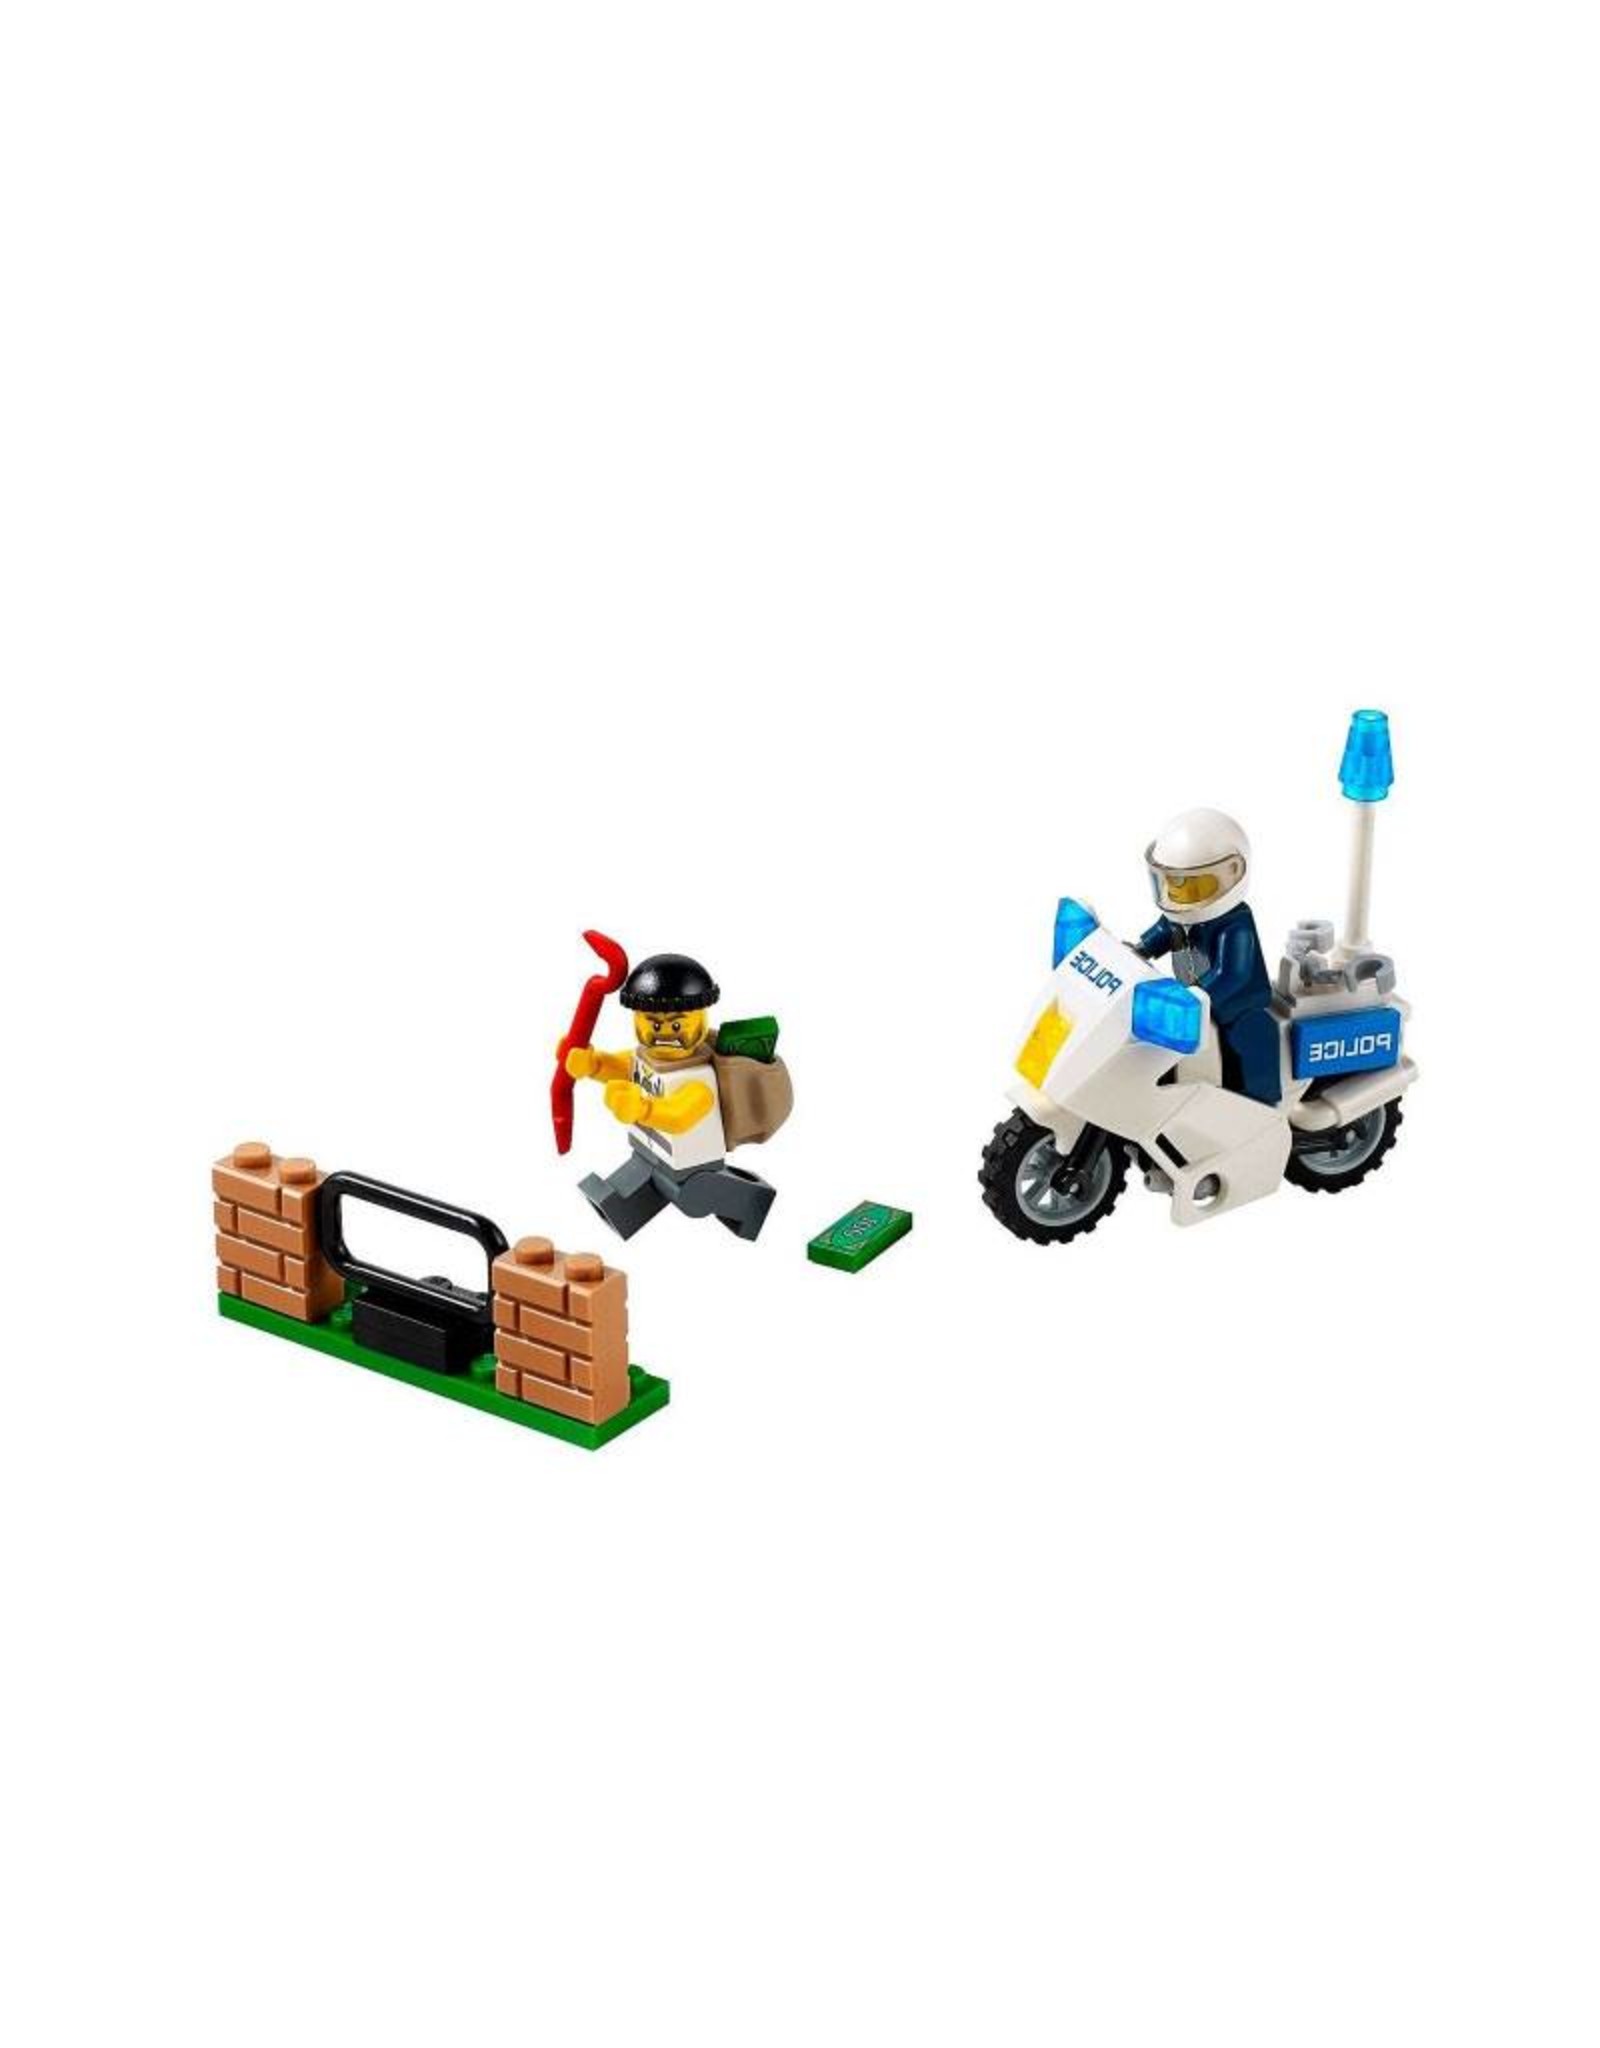 LEGO LEGO 60041 Boevenjacht met politiemotor CITY